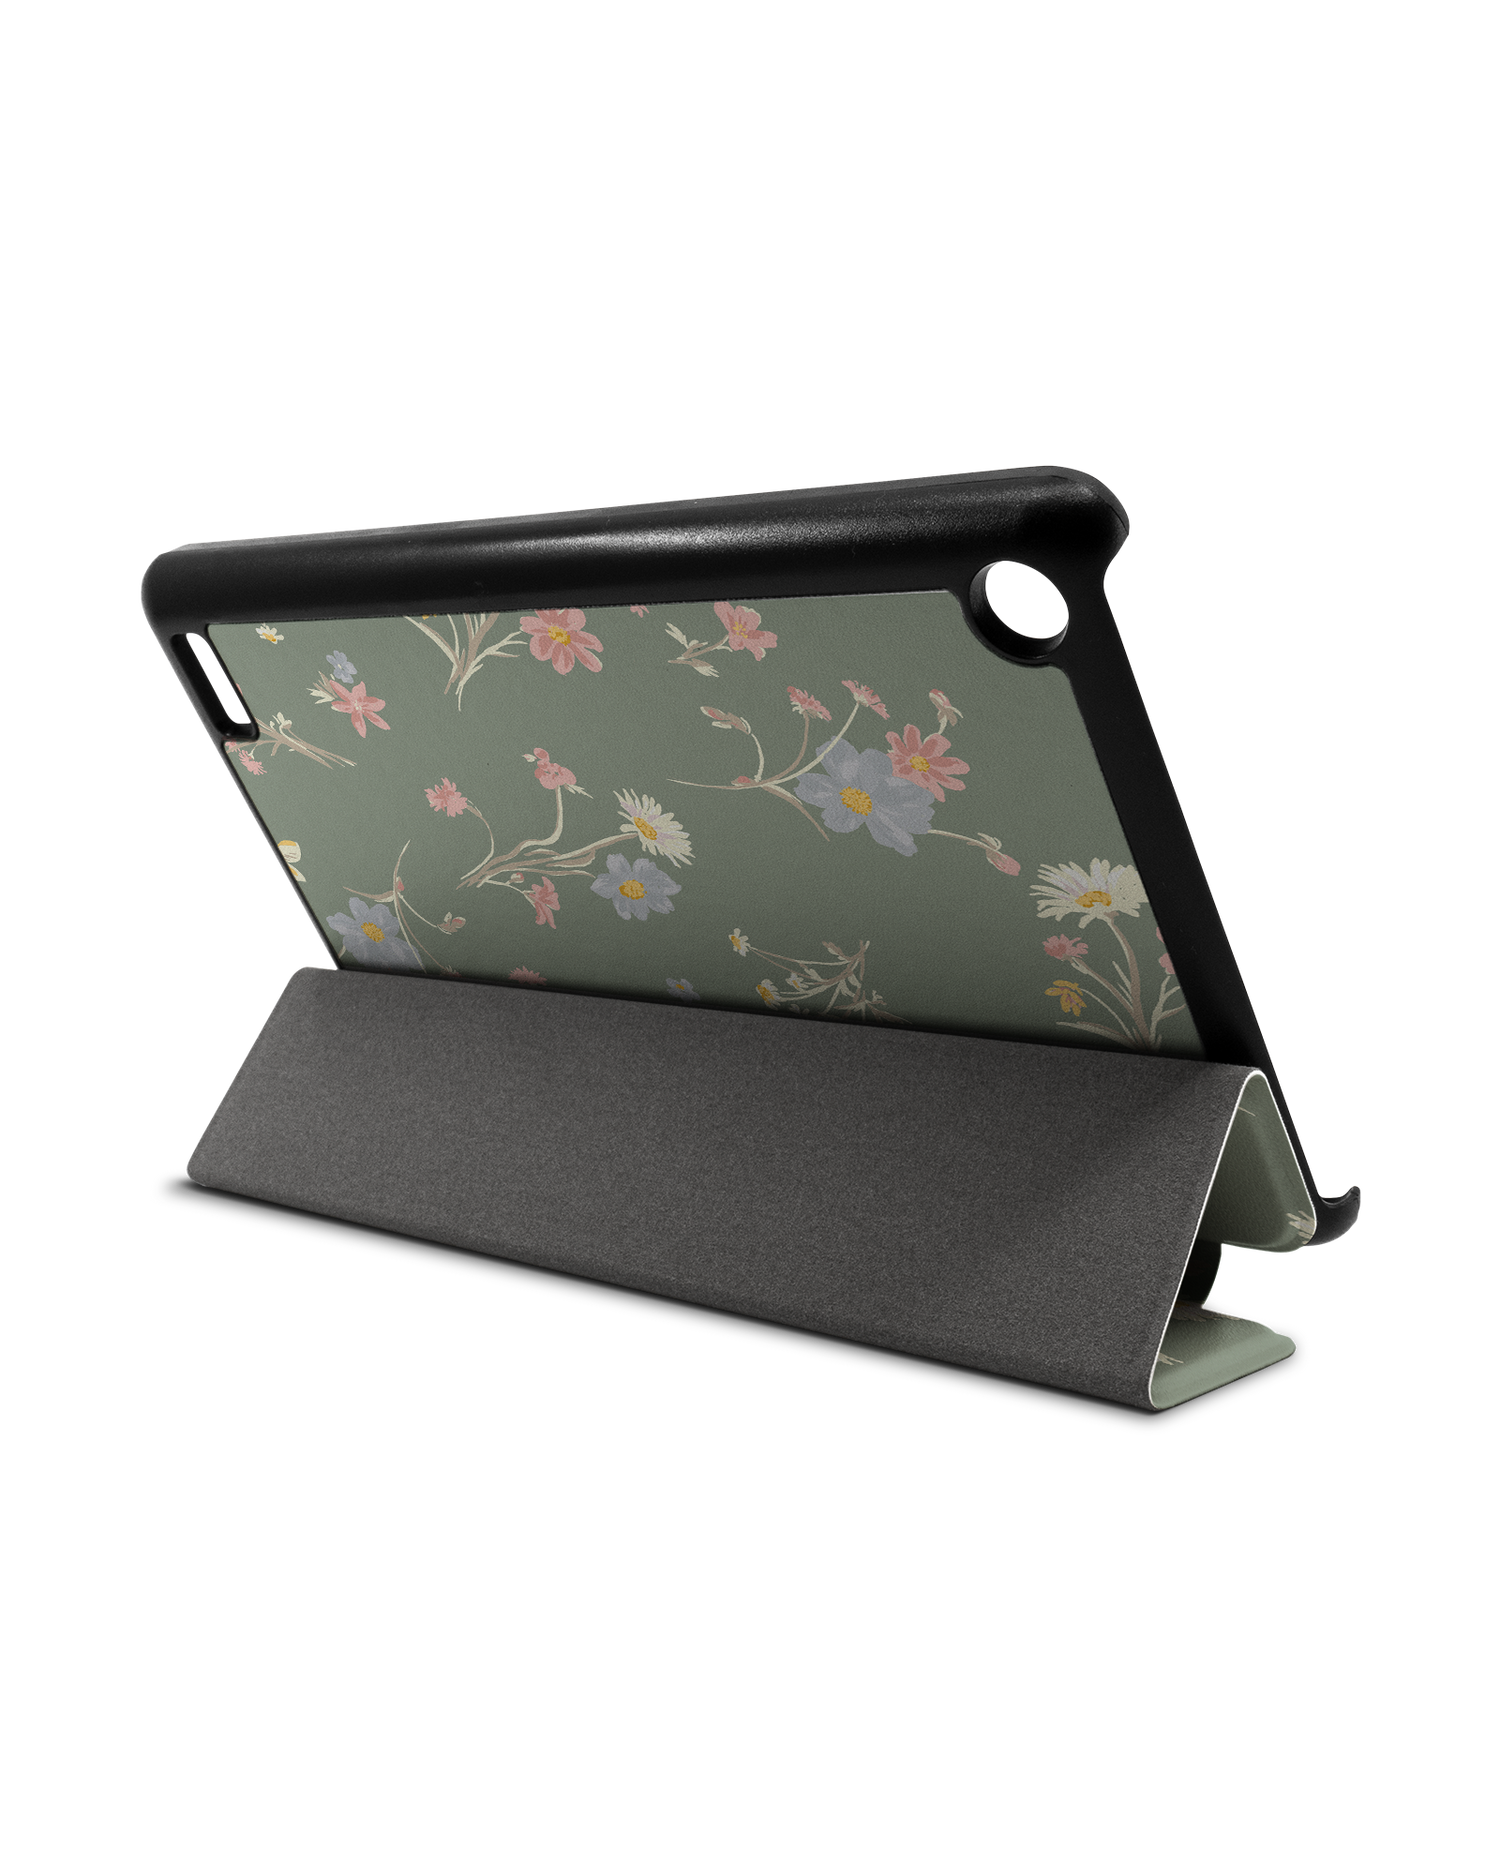 Wild Flower Sprigs Tablet Smart Case für Amazon Fire 7: Aufgestellt im Querformat